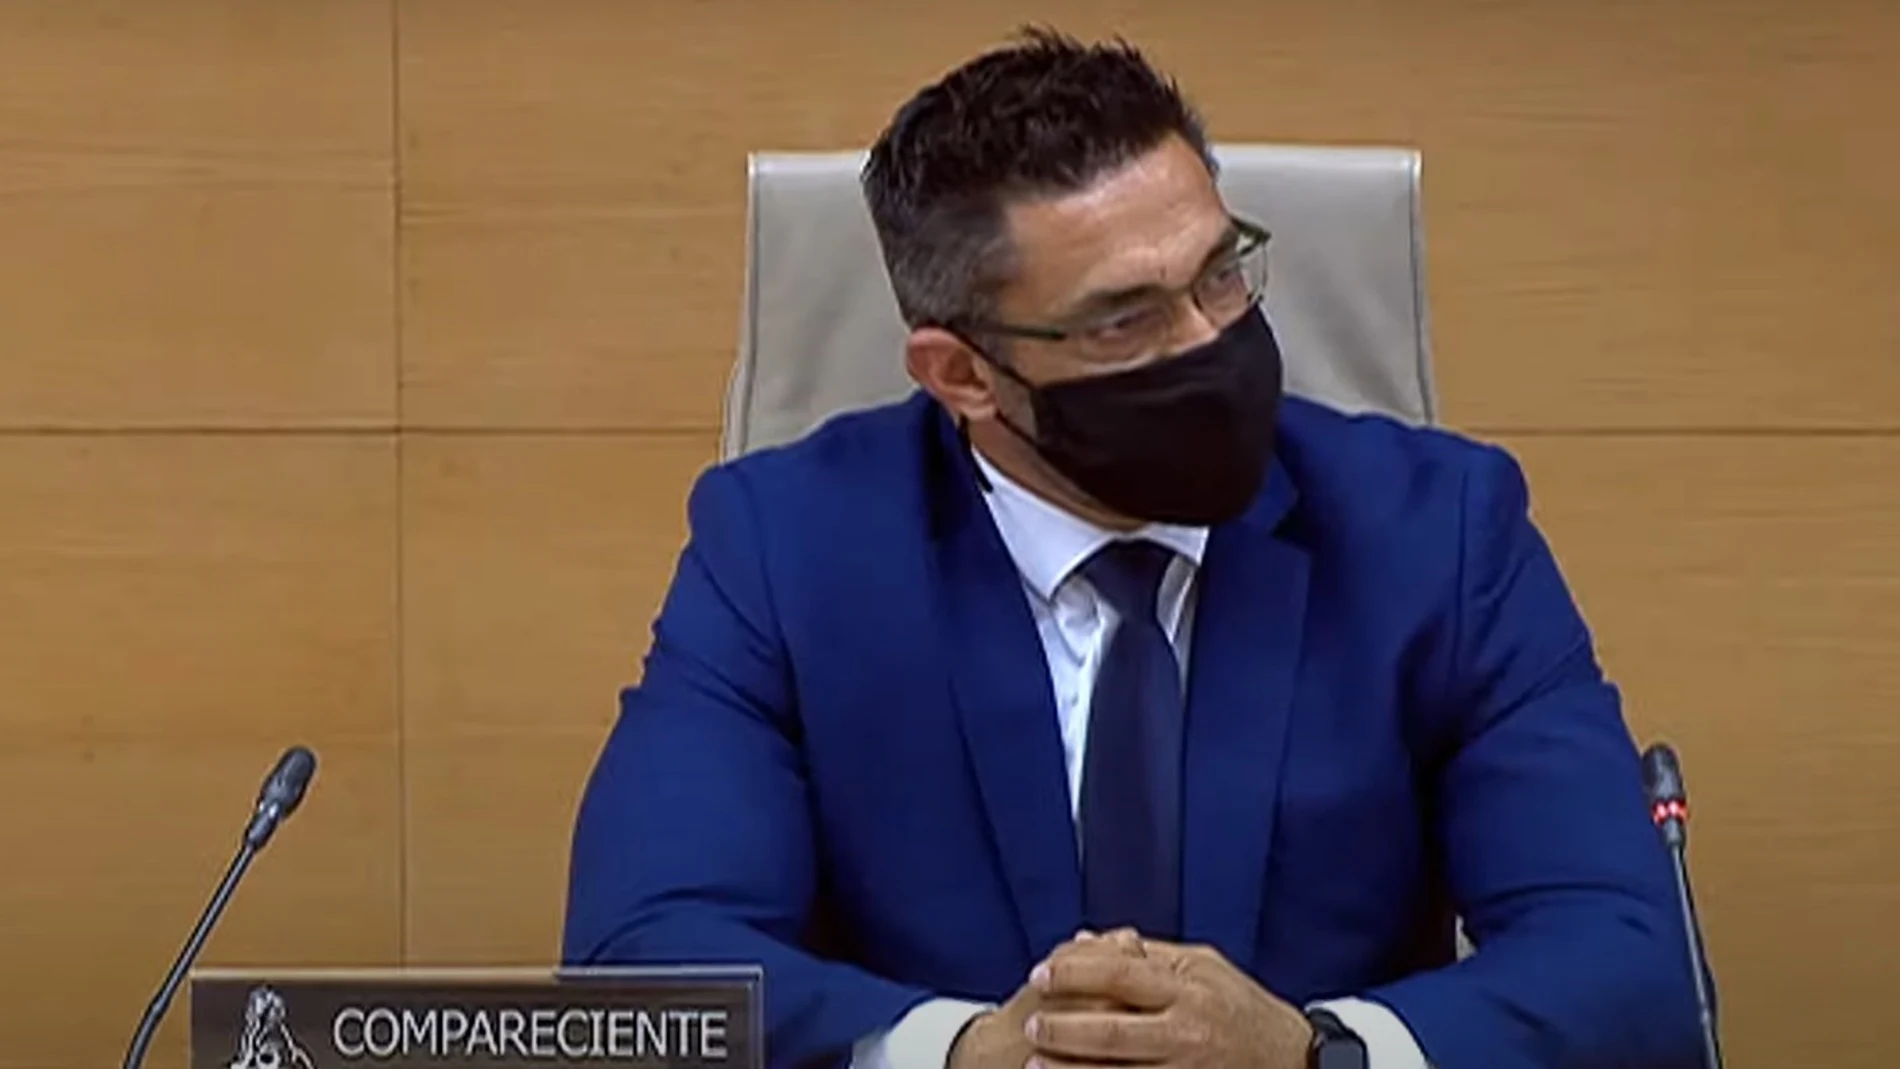 Sergio Ríos, exchófer de Bárcenas, ante la comisión "Kitchen" del Congreso